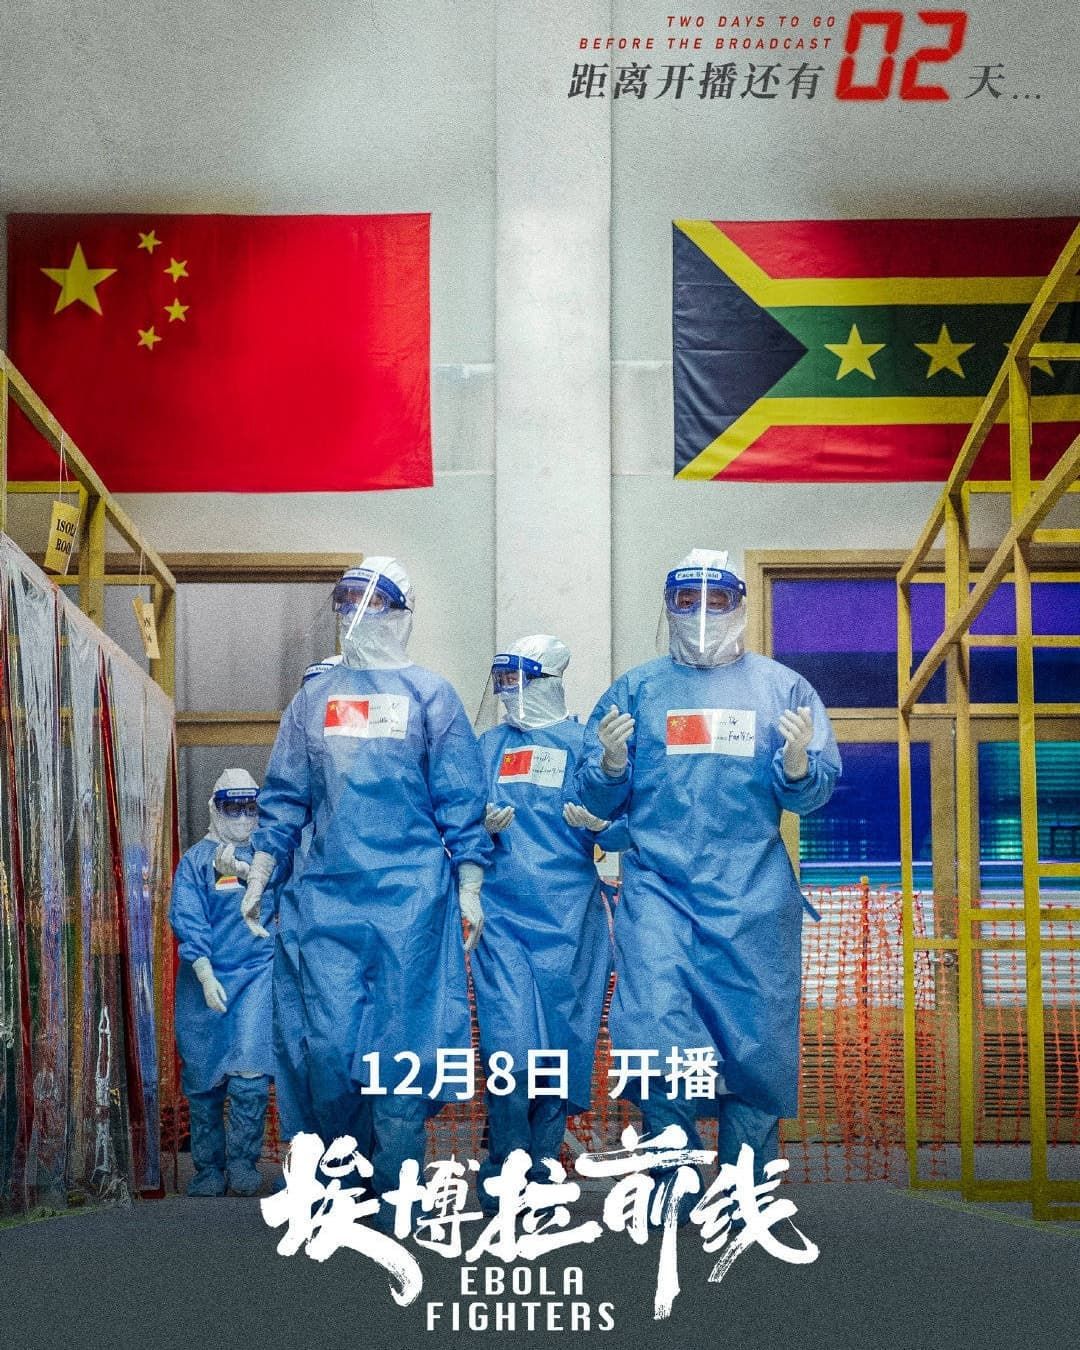 Sinopsis dan Pemain Ebola Fighters (2021), Drama China Luo Jin tentang Perjuangan Melawan Virus Ebola 